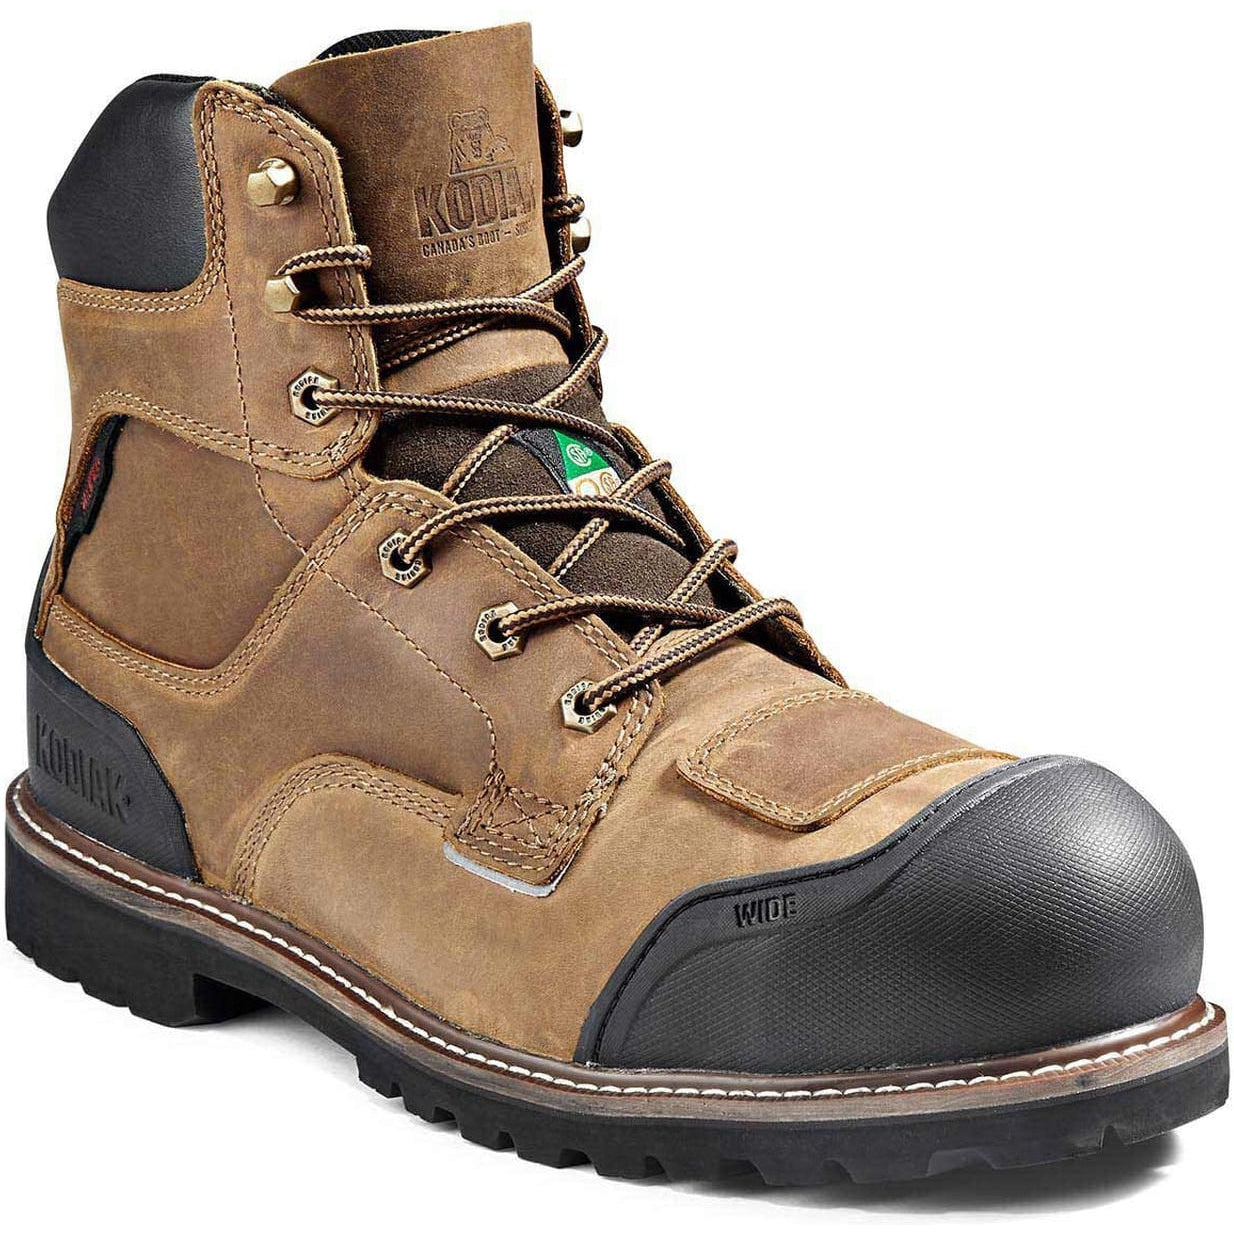 Kodiak Men's Generations Widebody 6" Comp Toe WP Work Boot -Brown- 4TGBBN 8 / Extra Wide / Brown - Overlook Boots